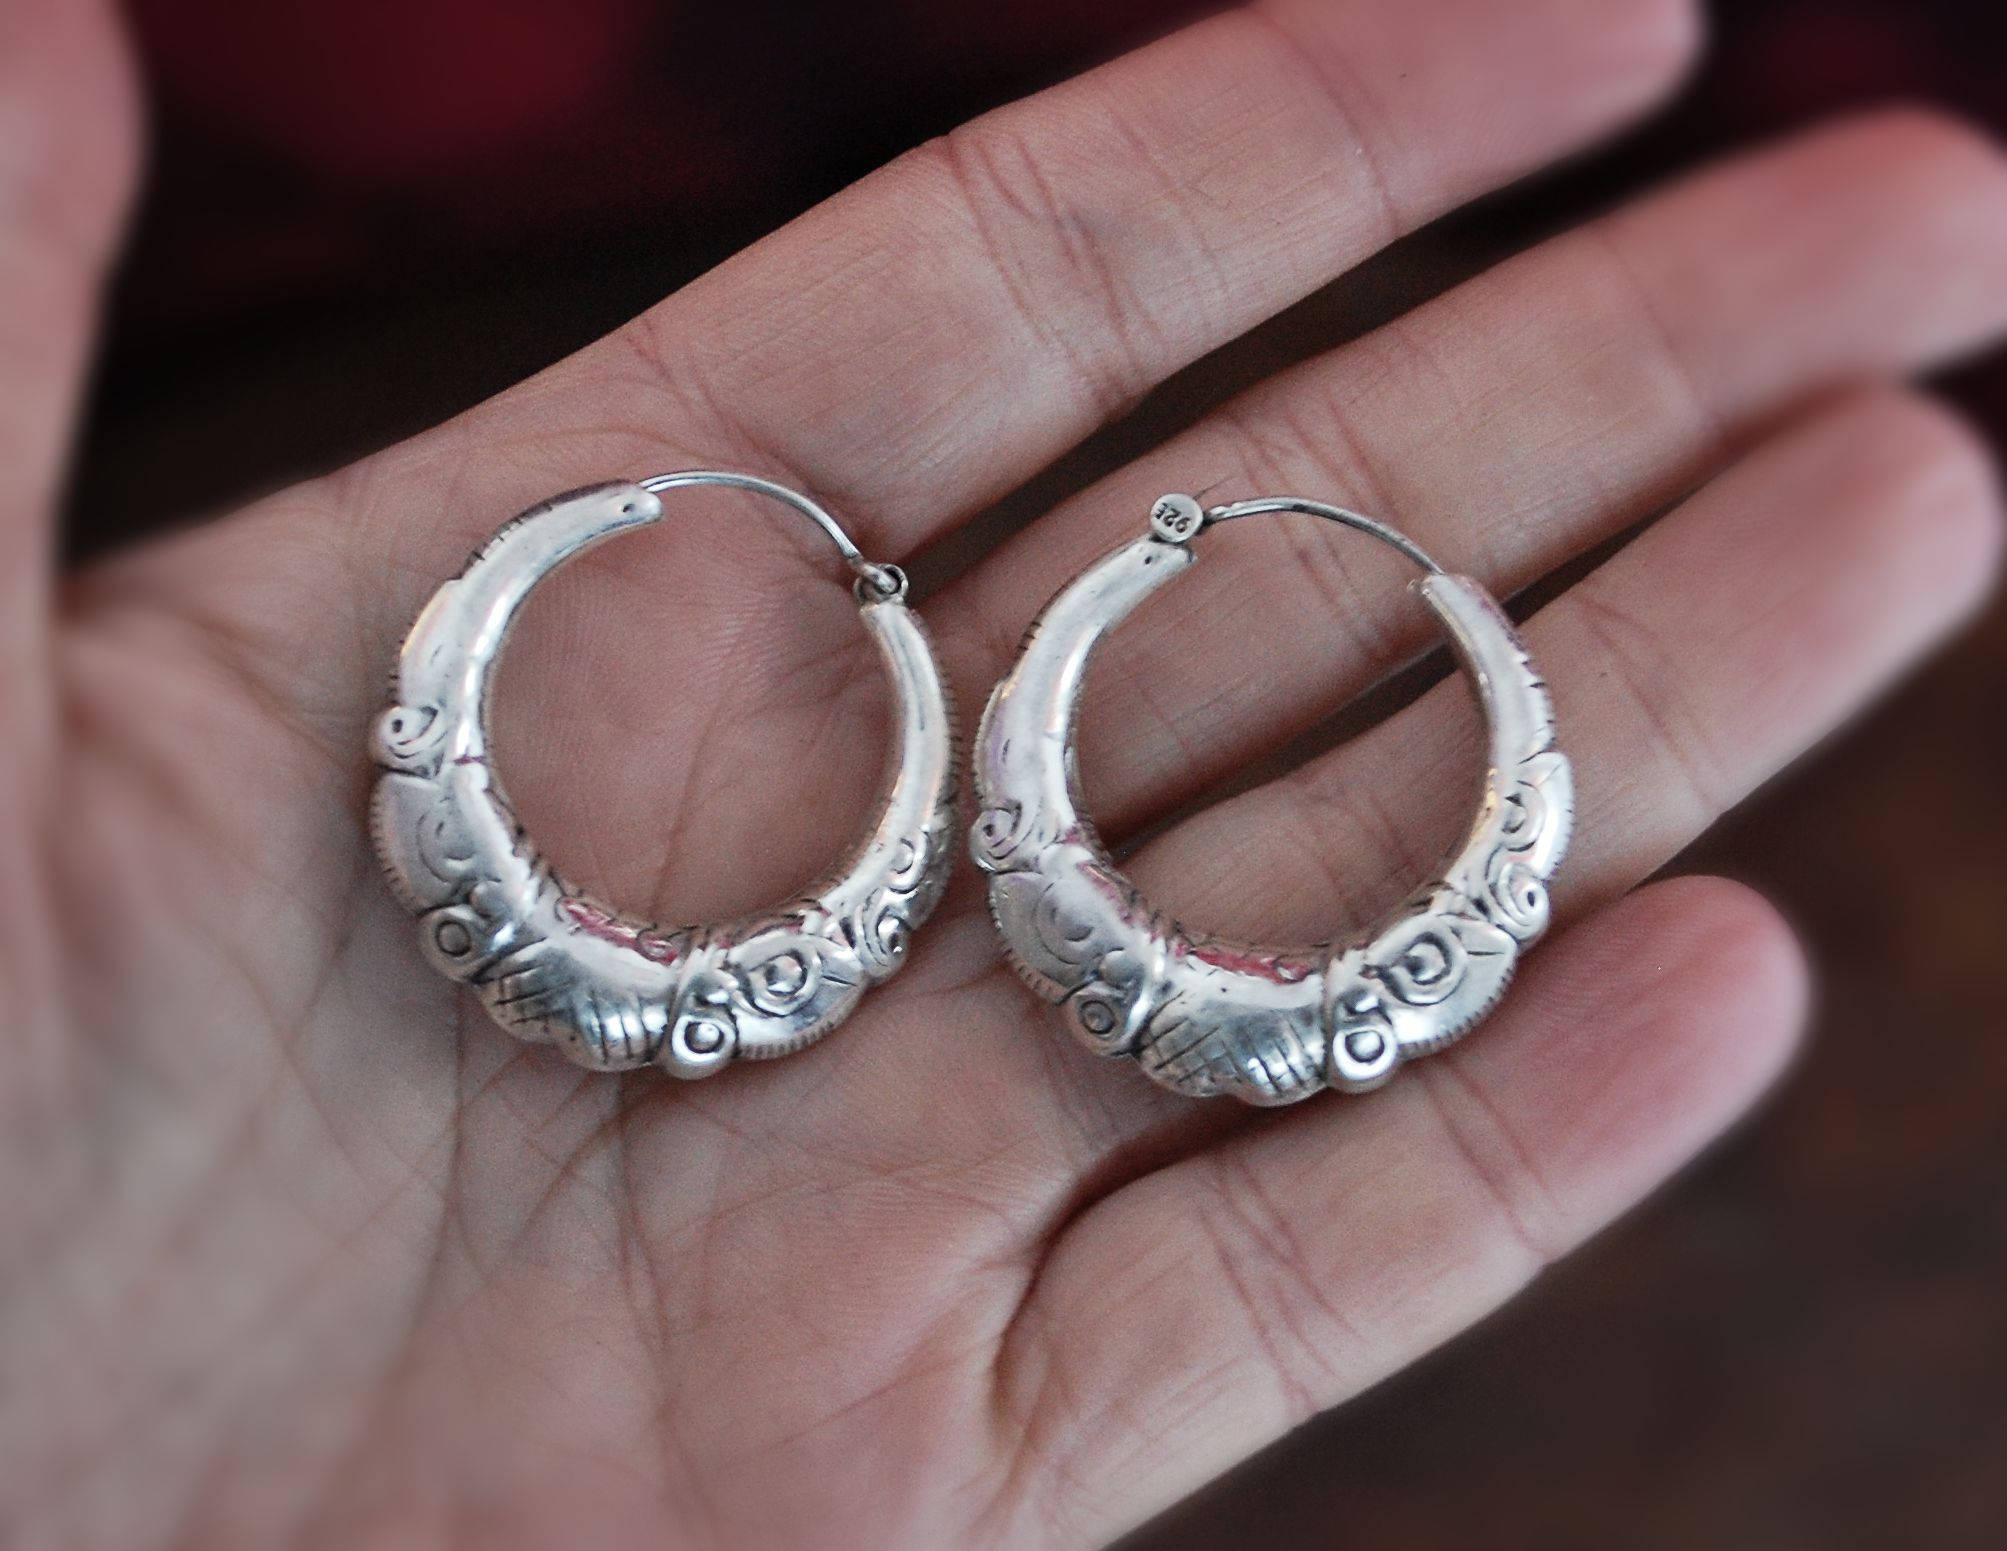 Rajasthani Silver Hoop Earrings - Sterling Silver Hoop Earrings from India - Ethnic Sterling Silver Hoop Earrings - Rajasthan Silver